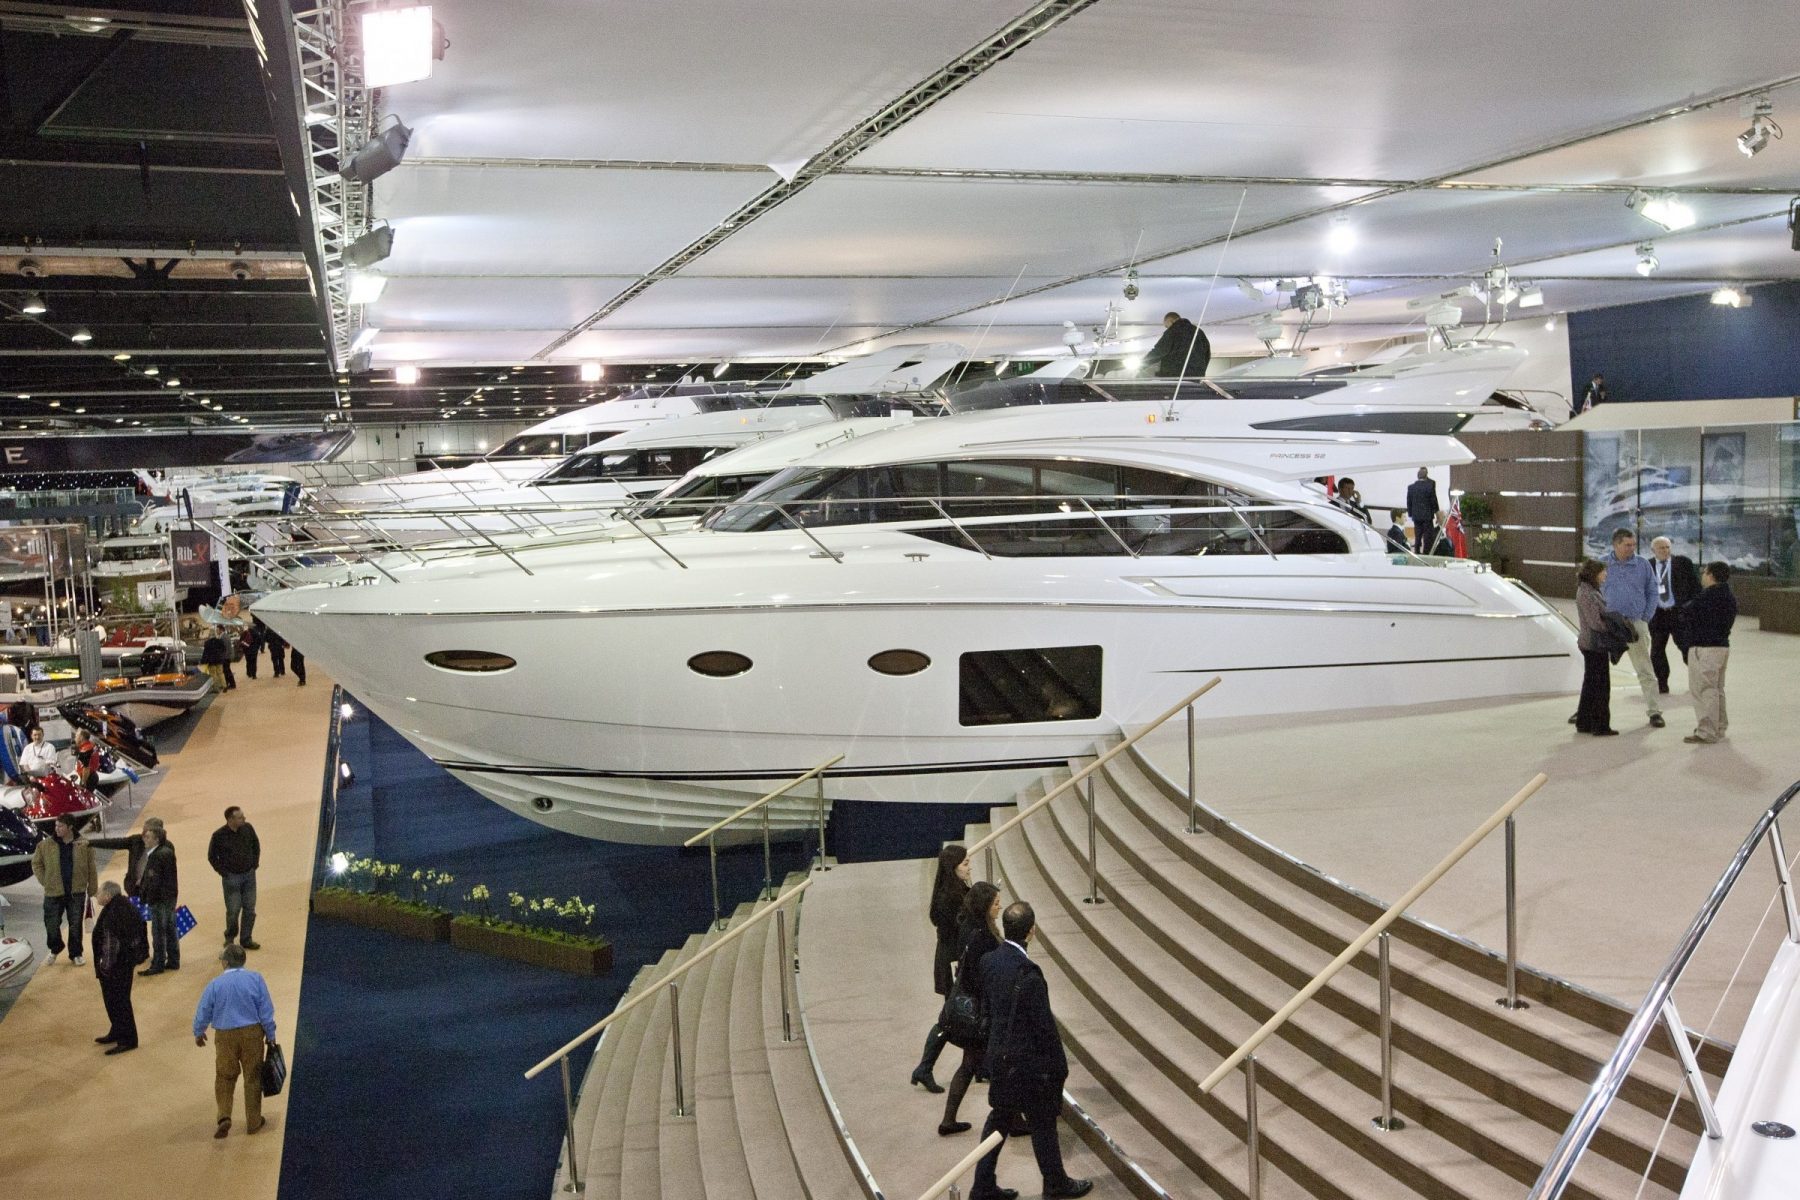 global luxury yacht market